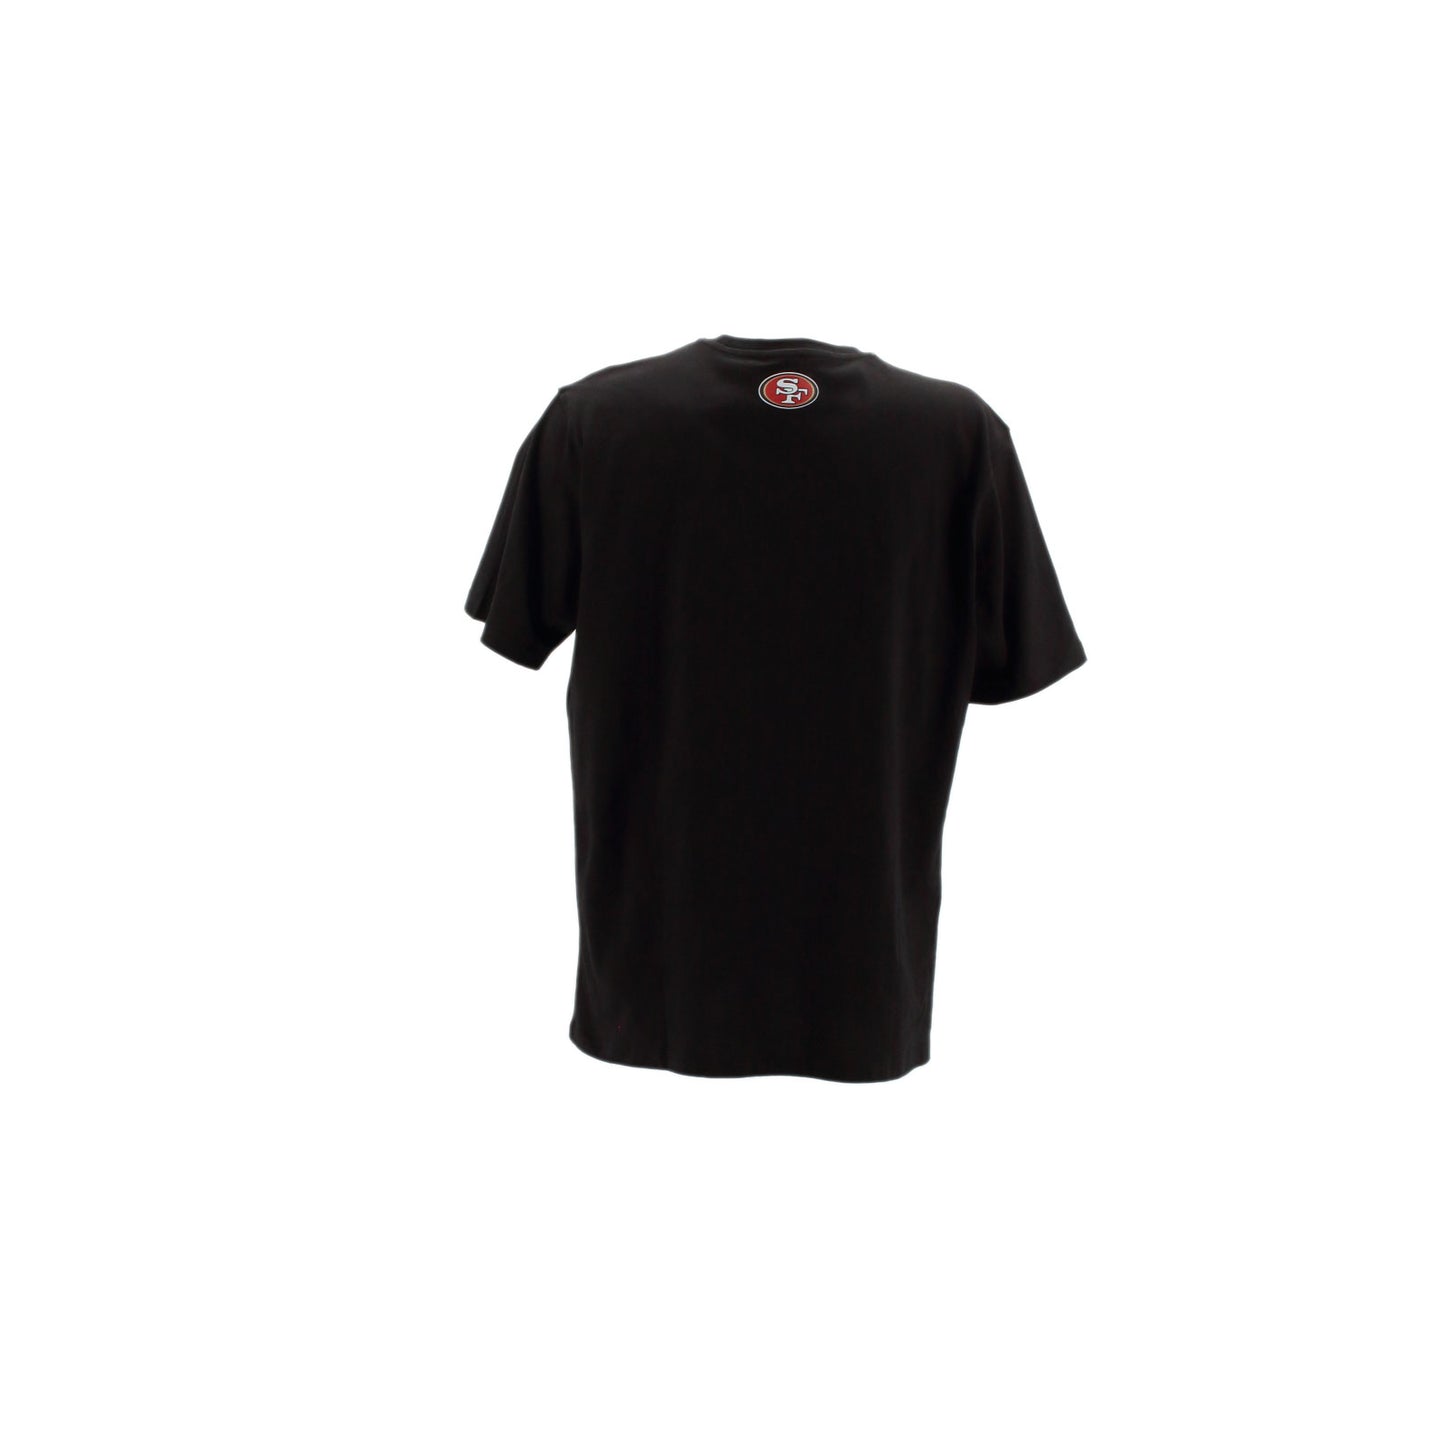 Fanatics NFL San Francisco 49ers Herren kurzarm T-Shirt schwarz 2019MBLK1OSS49